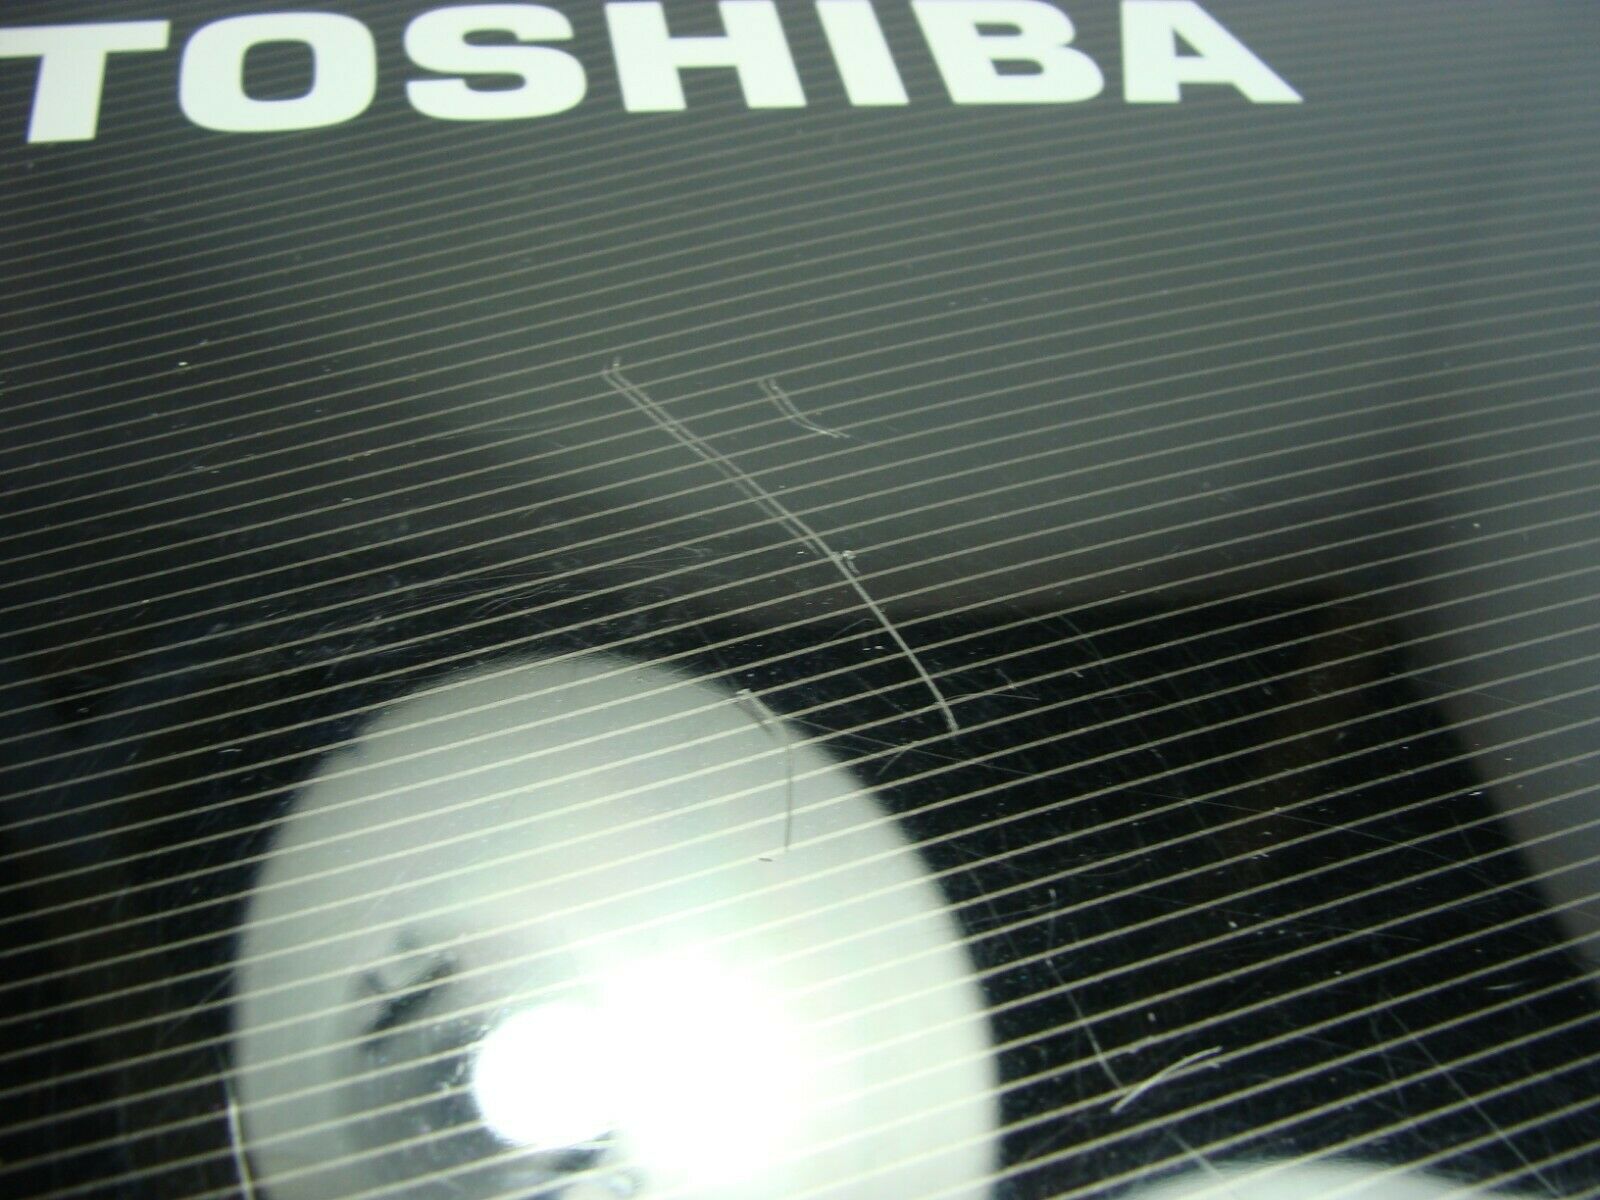 Toshiba Satellite 16